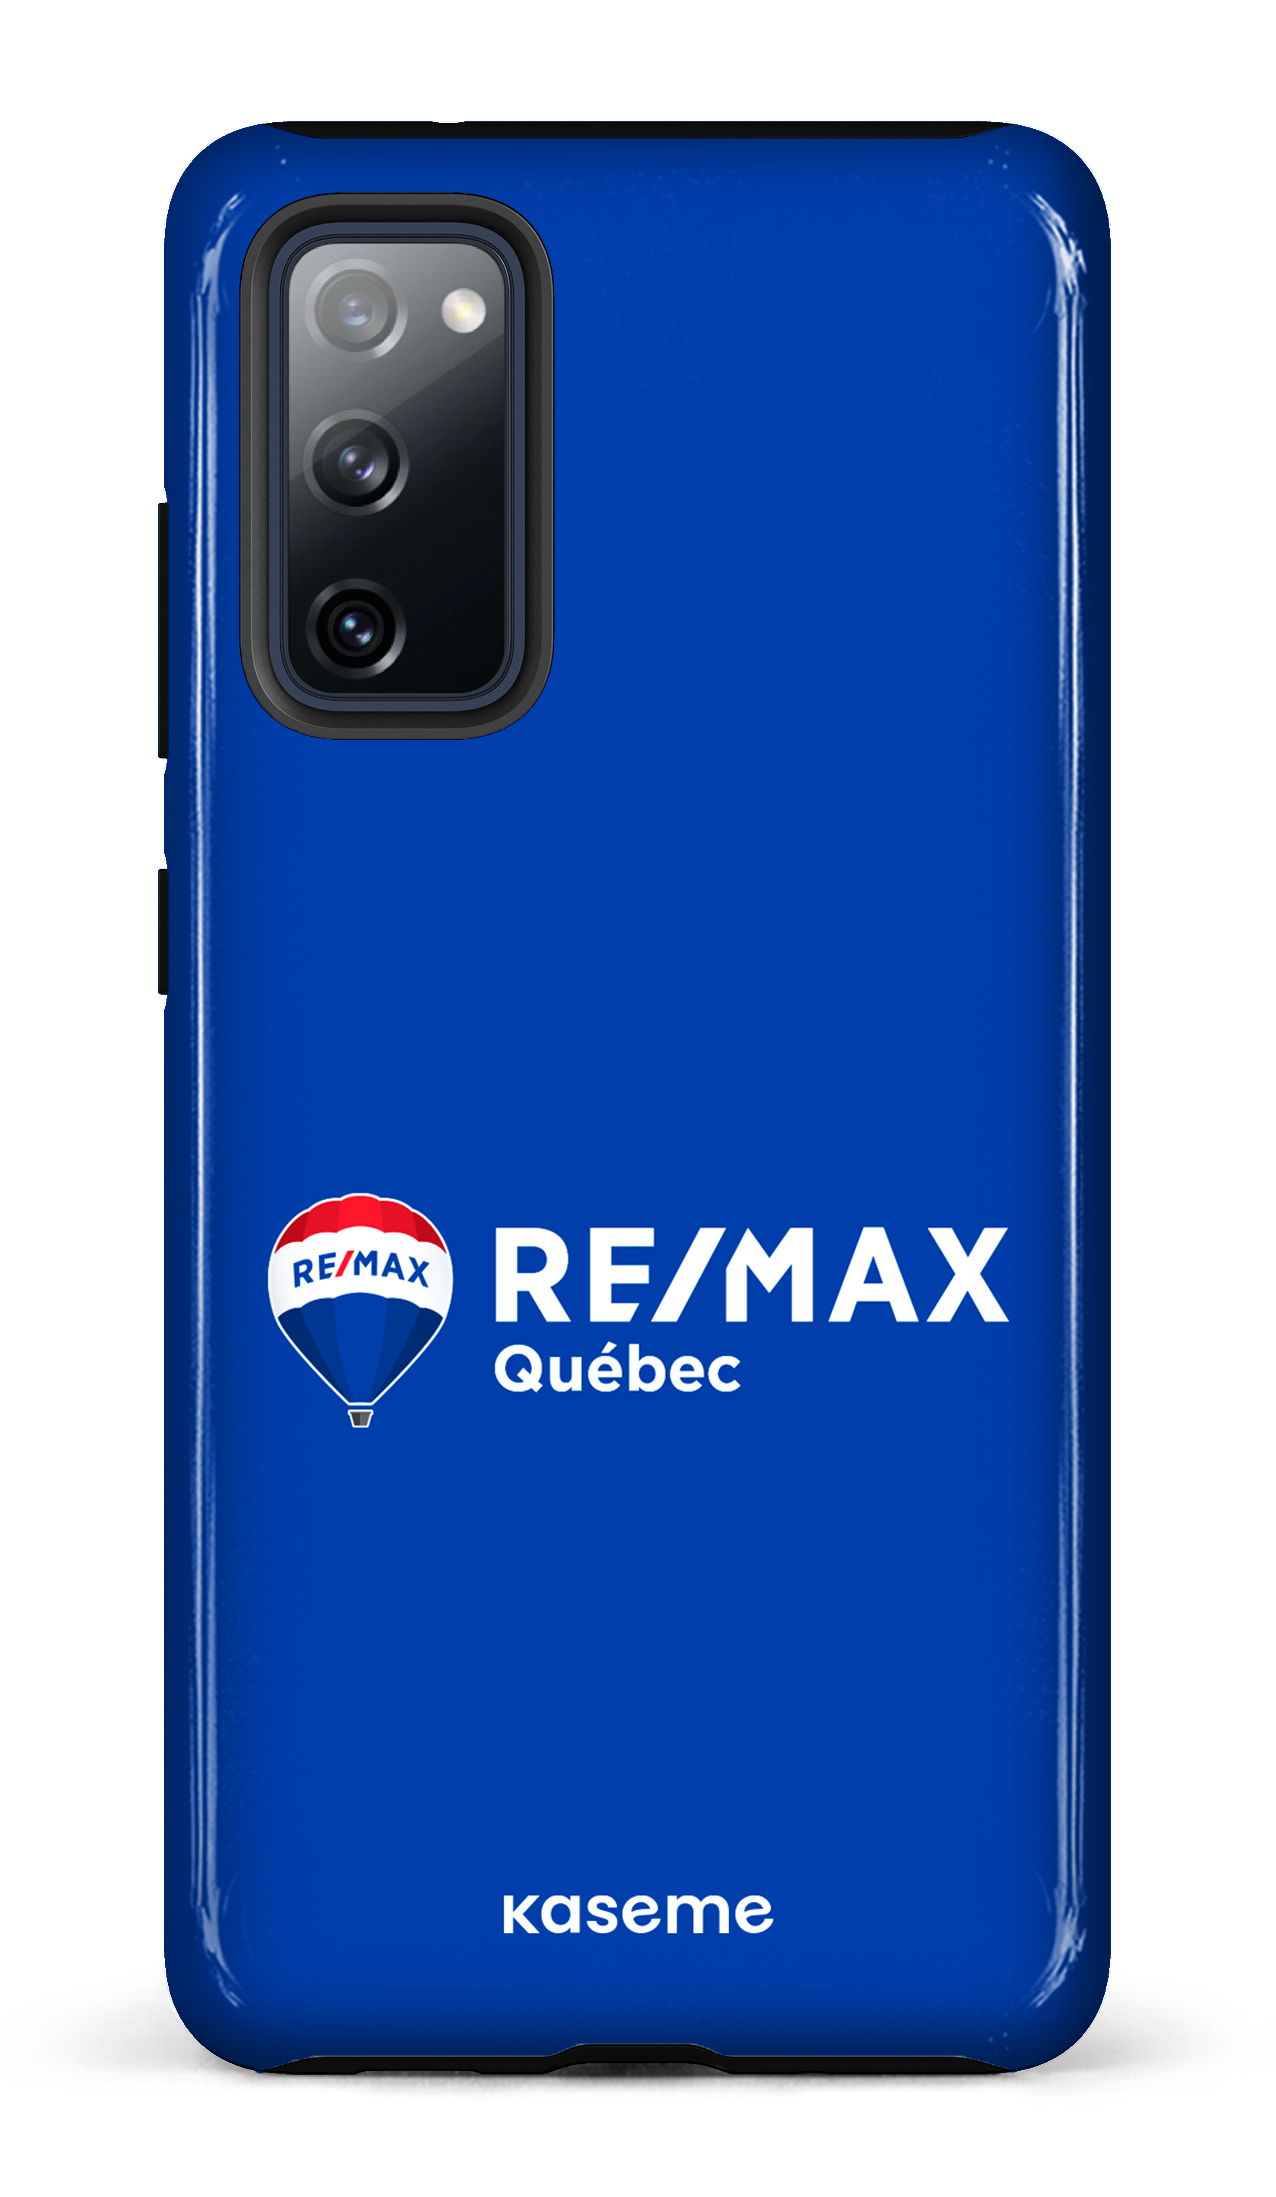 Remax Québec Bleu - Galaxy S20 FE